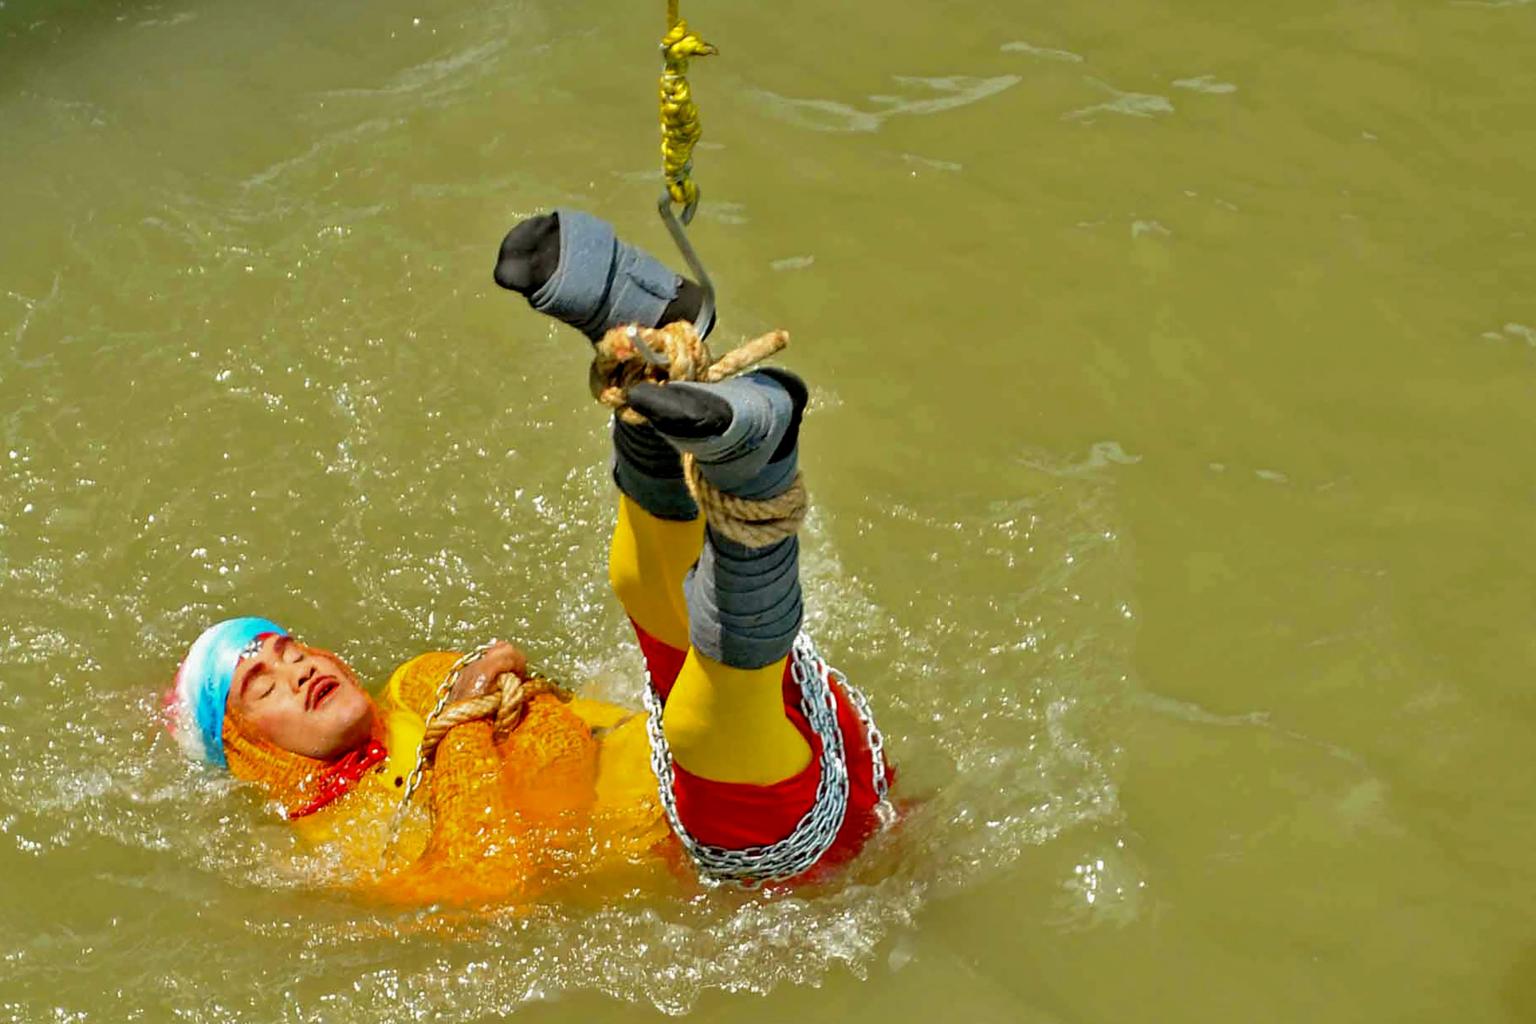 ინდოელი ილუზიონისტი, რომელიც წყალში ჯაჭვებით დაბმული ჩავიდა დაიღუპა